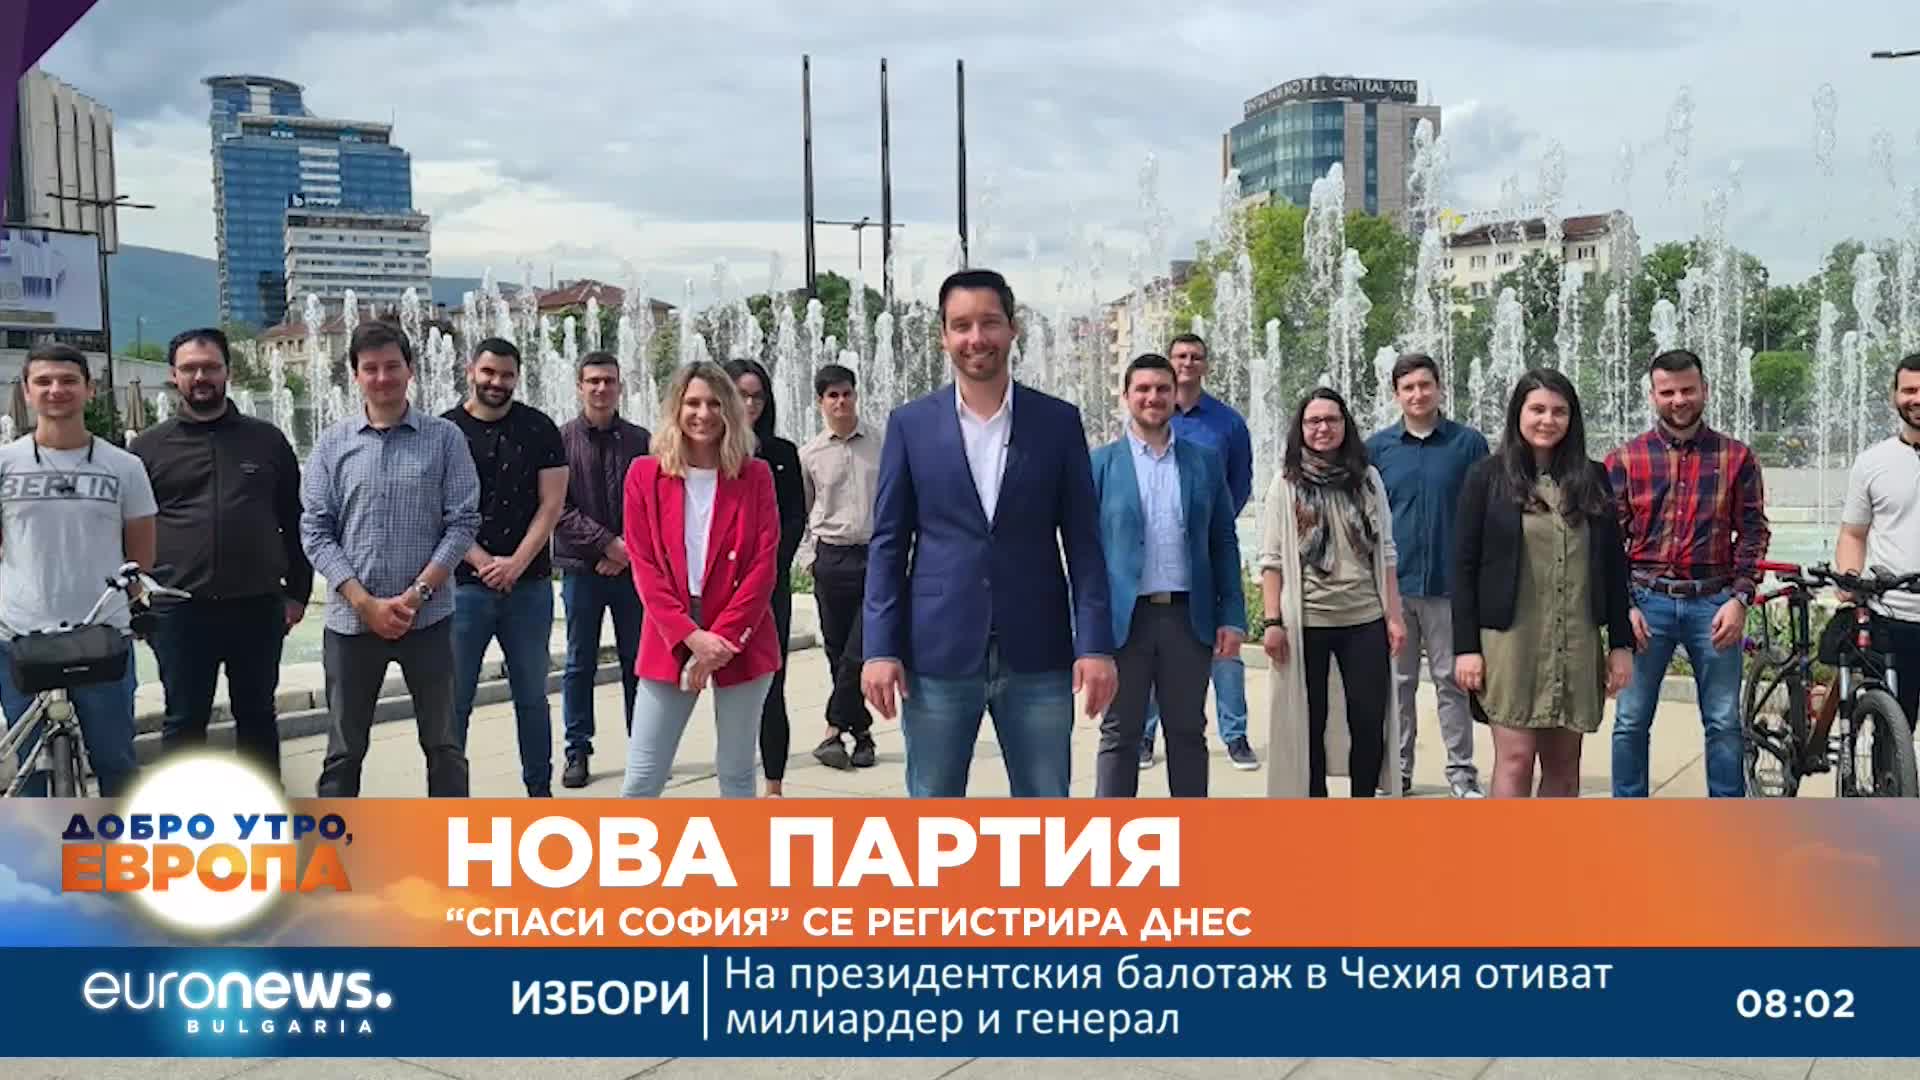 Нова партия: „Спаси София“ се регистрира днес